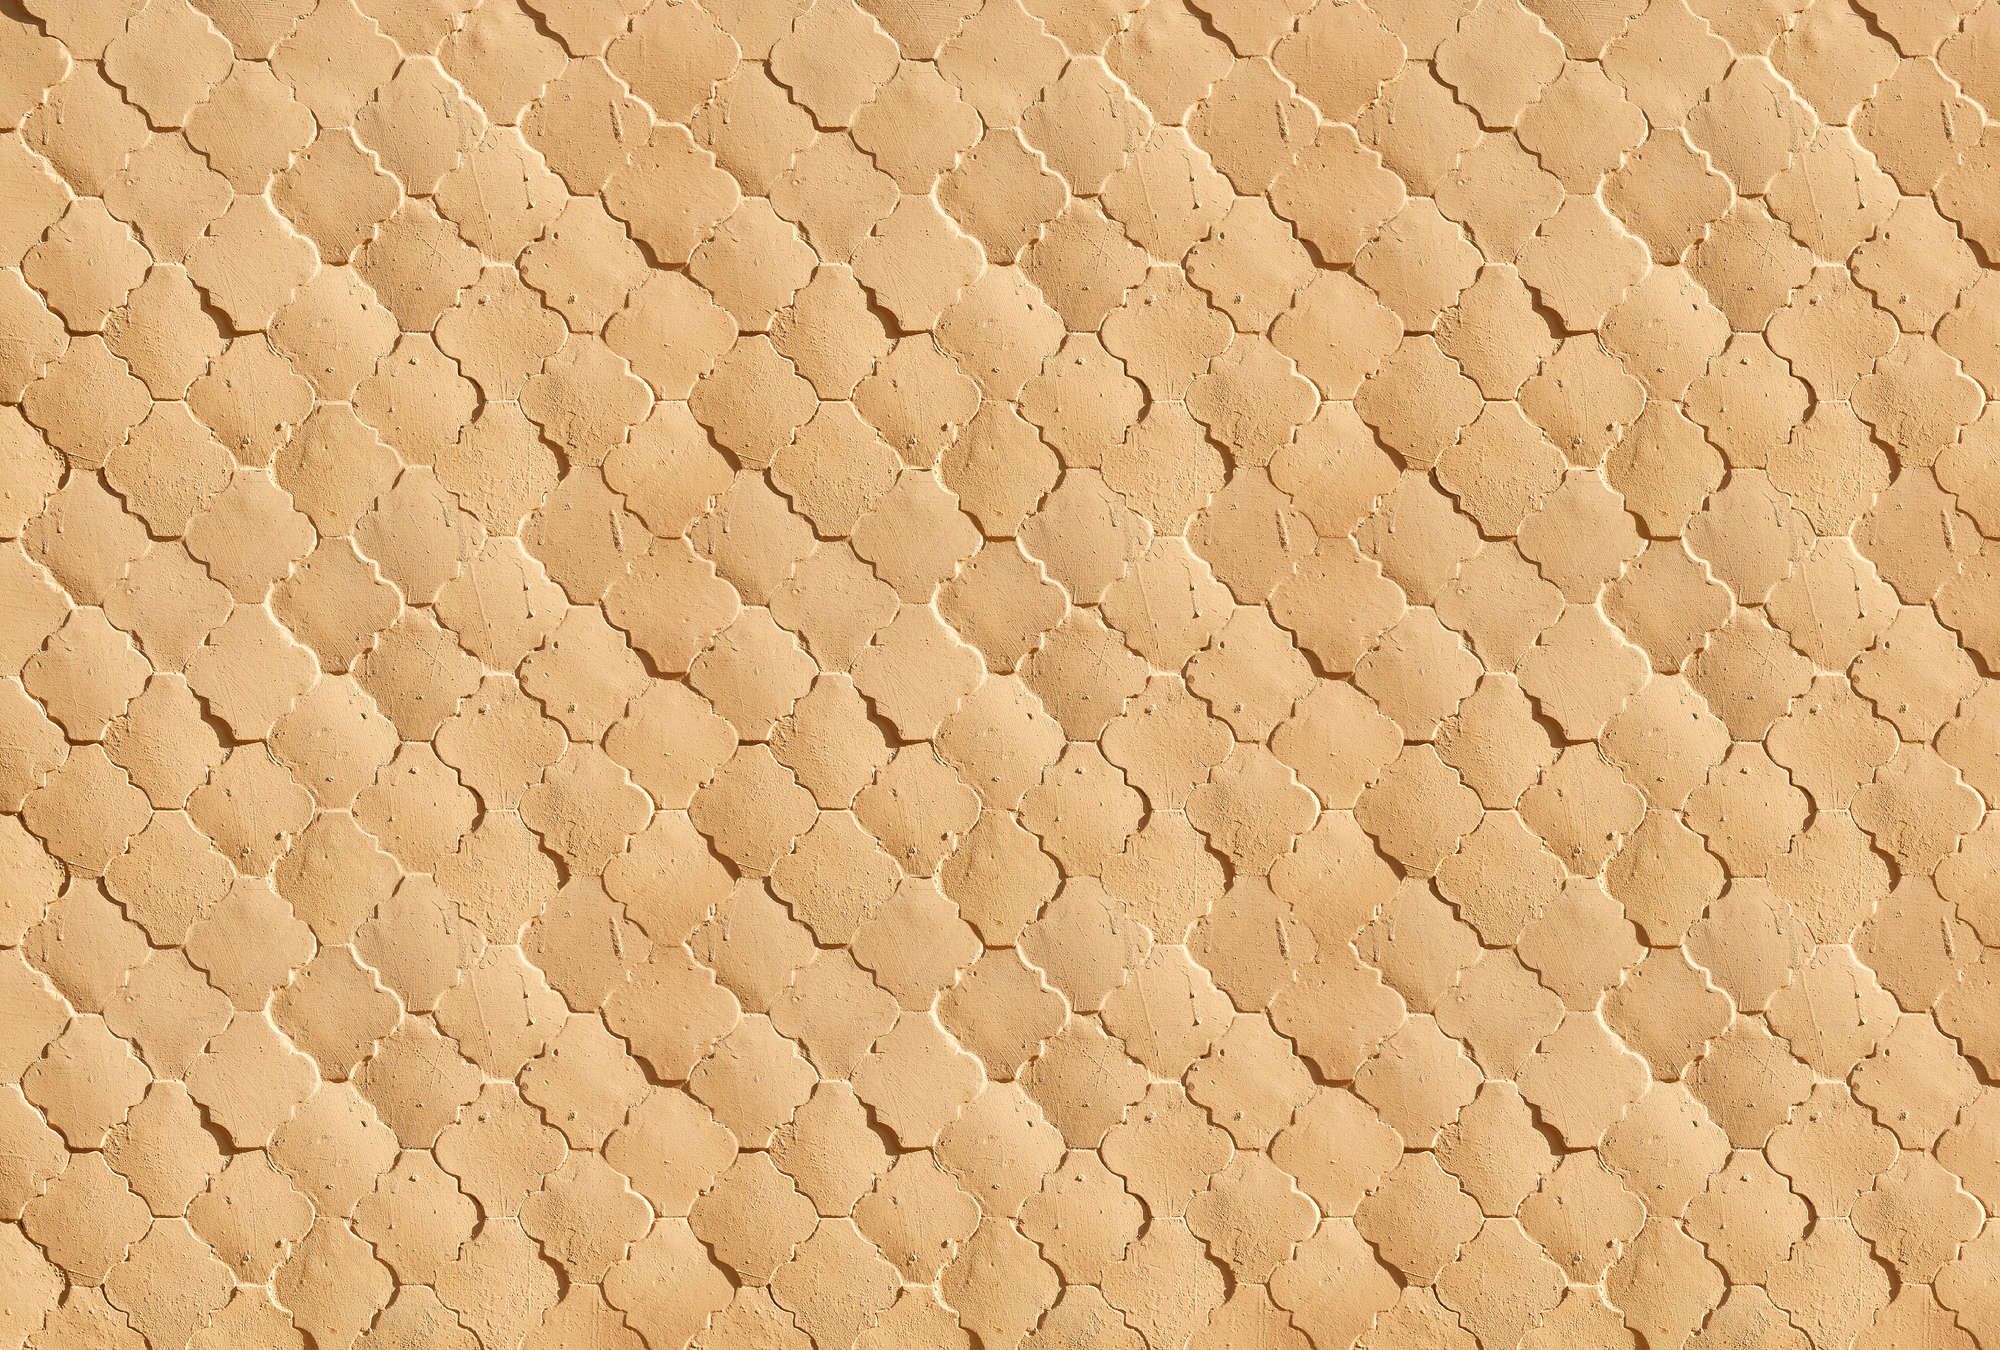             Fotomural »siena« - Diseño de azulejos mediterráneos en colores arena - Material no tejido liso, ligeramente nacarado y brillante
        